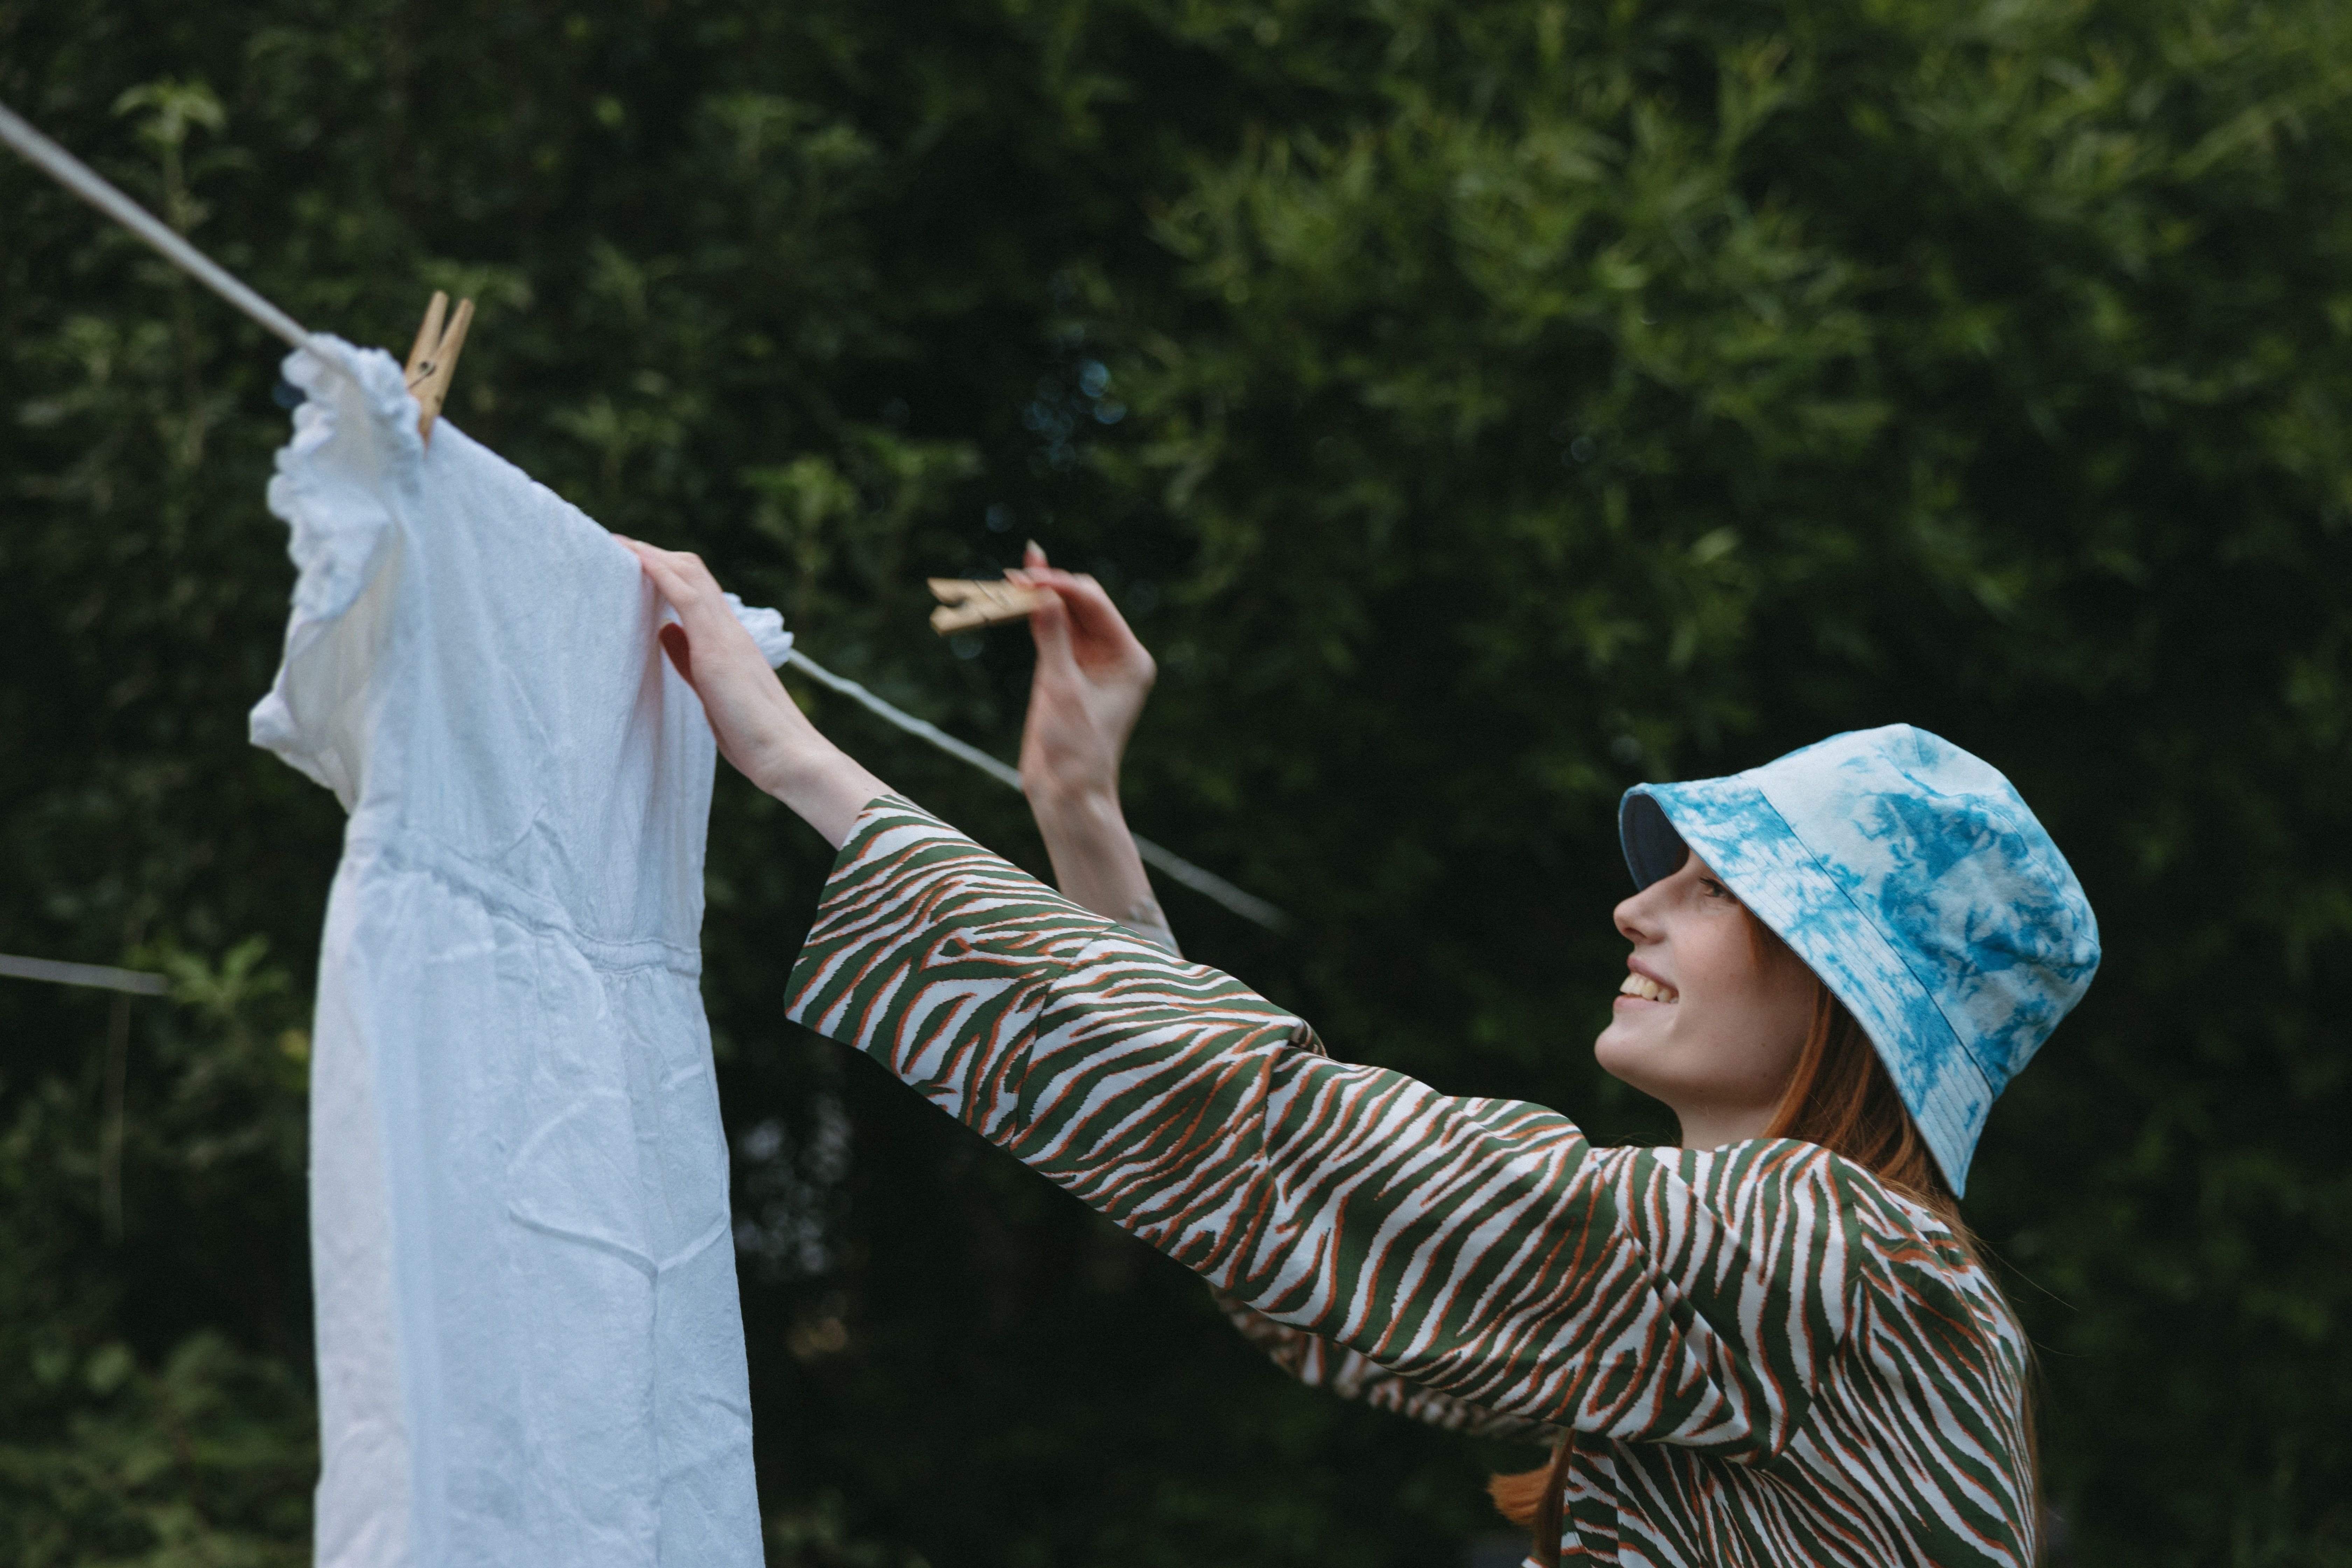 Une femme avec un bob bleu ciel délavé accroche une robe blanche pour la faire sécher, à l'aide de pinces à linge